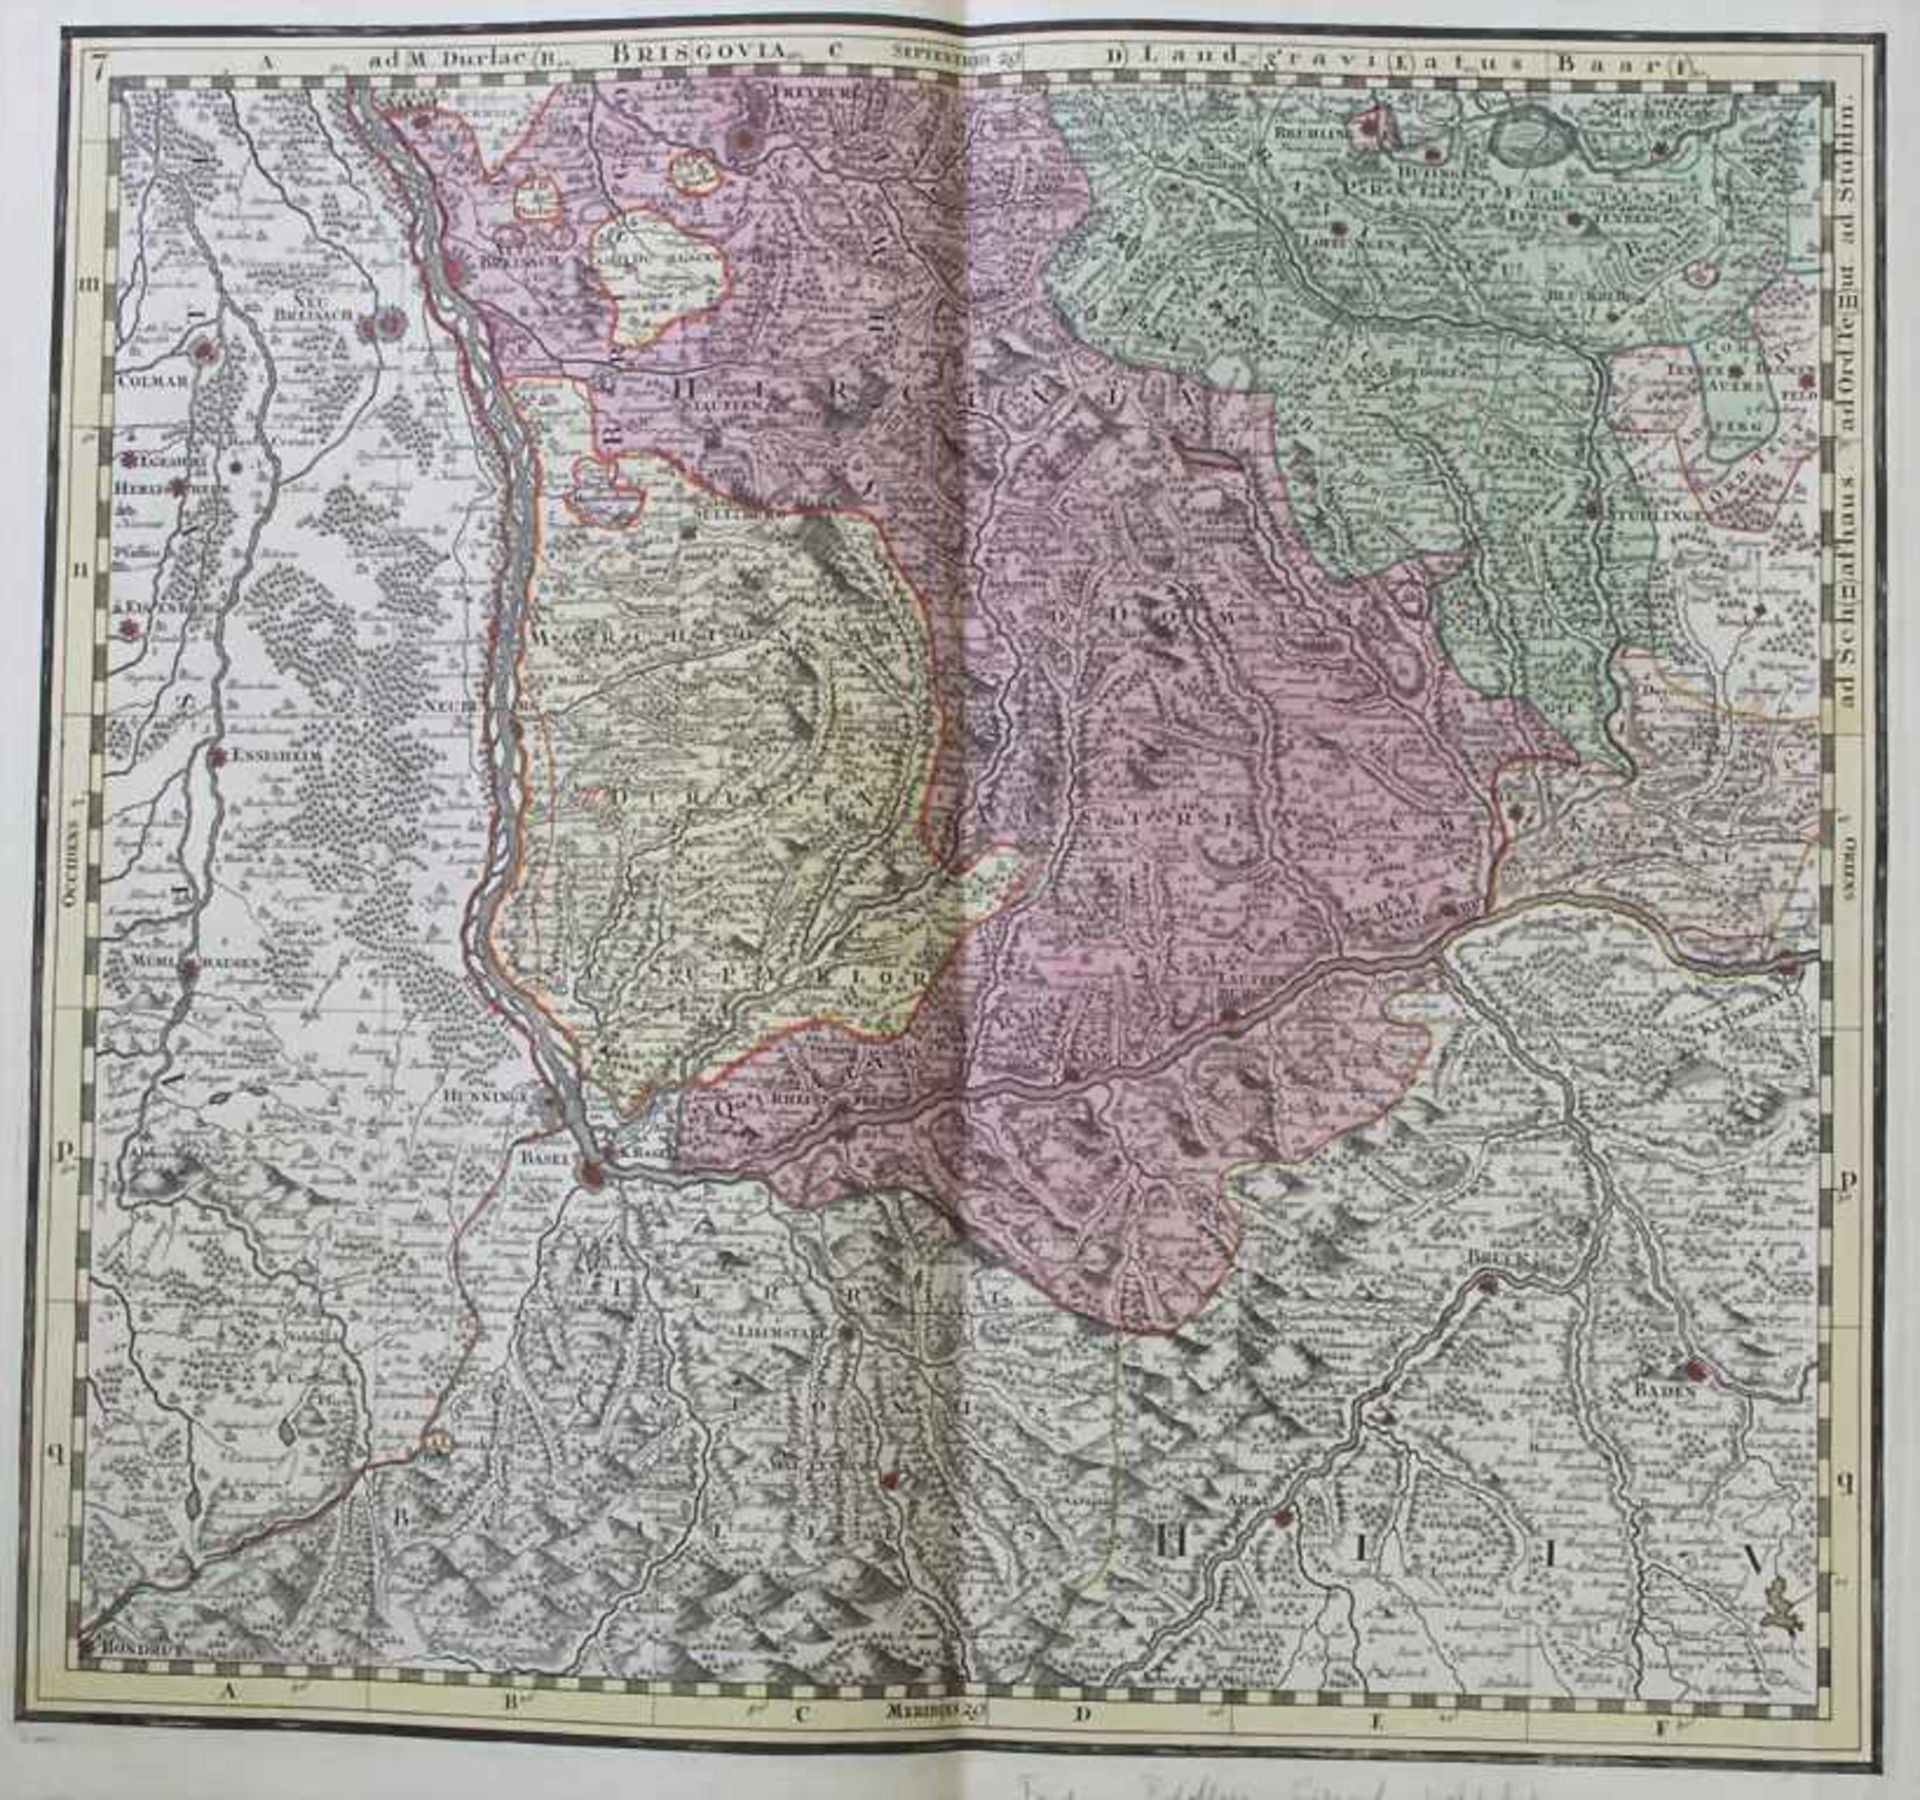 Matthias Seutter (1678-1757), Historische Karte 'Elsass, Baden' / A historic map of Alsace, Bade